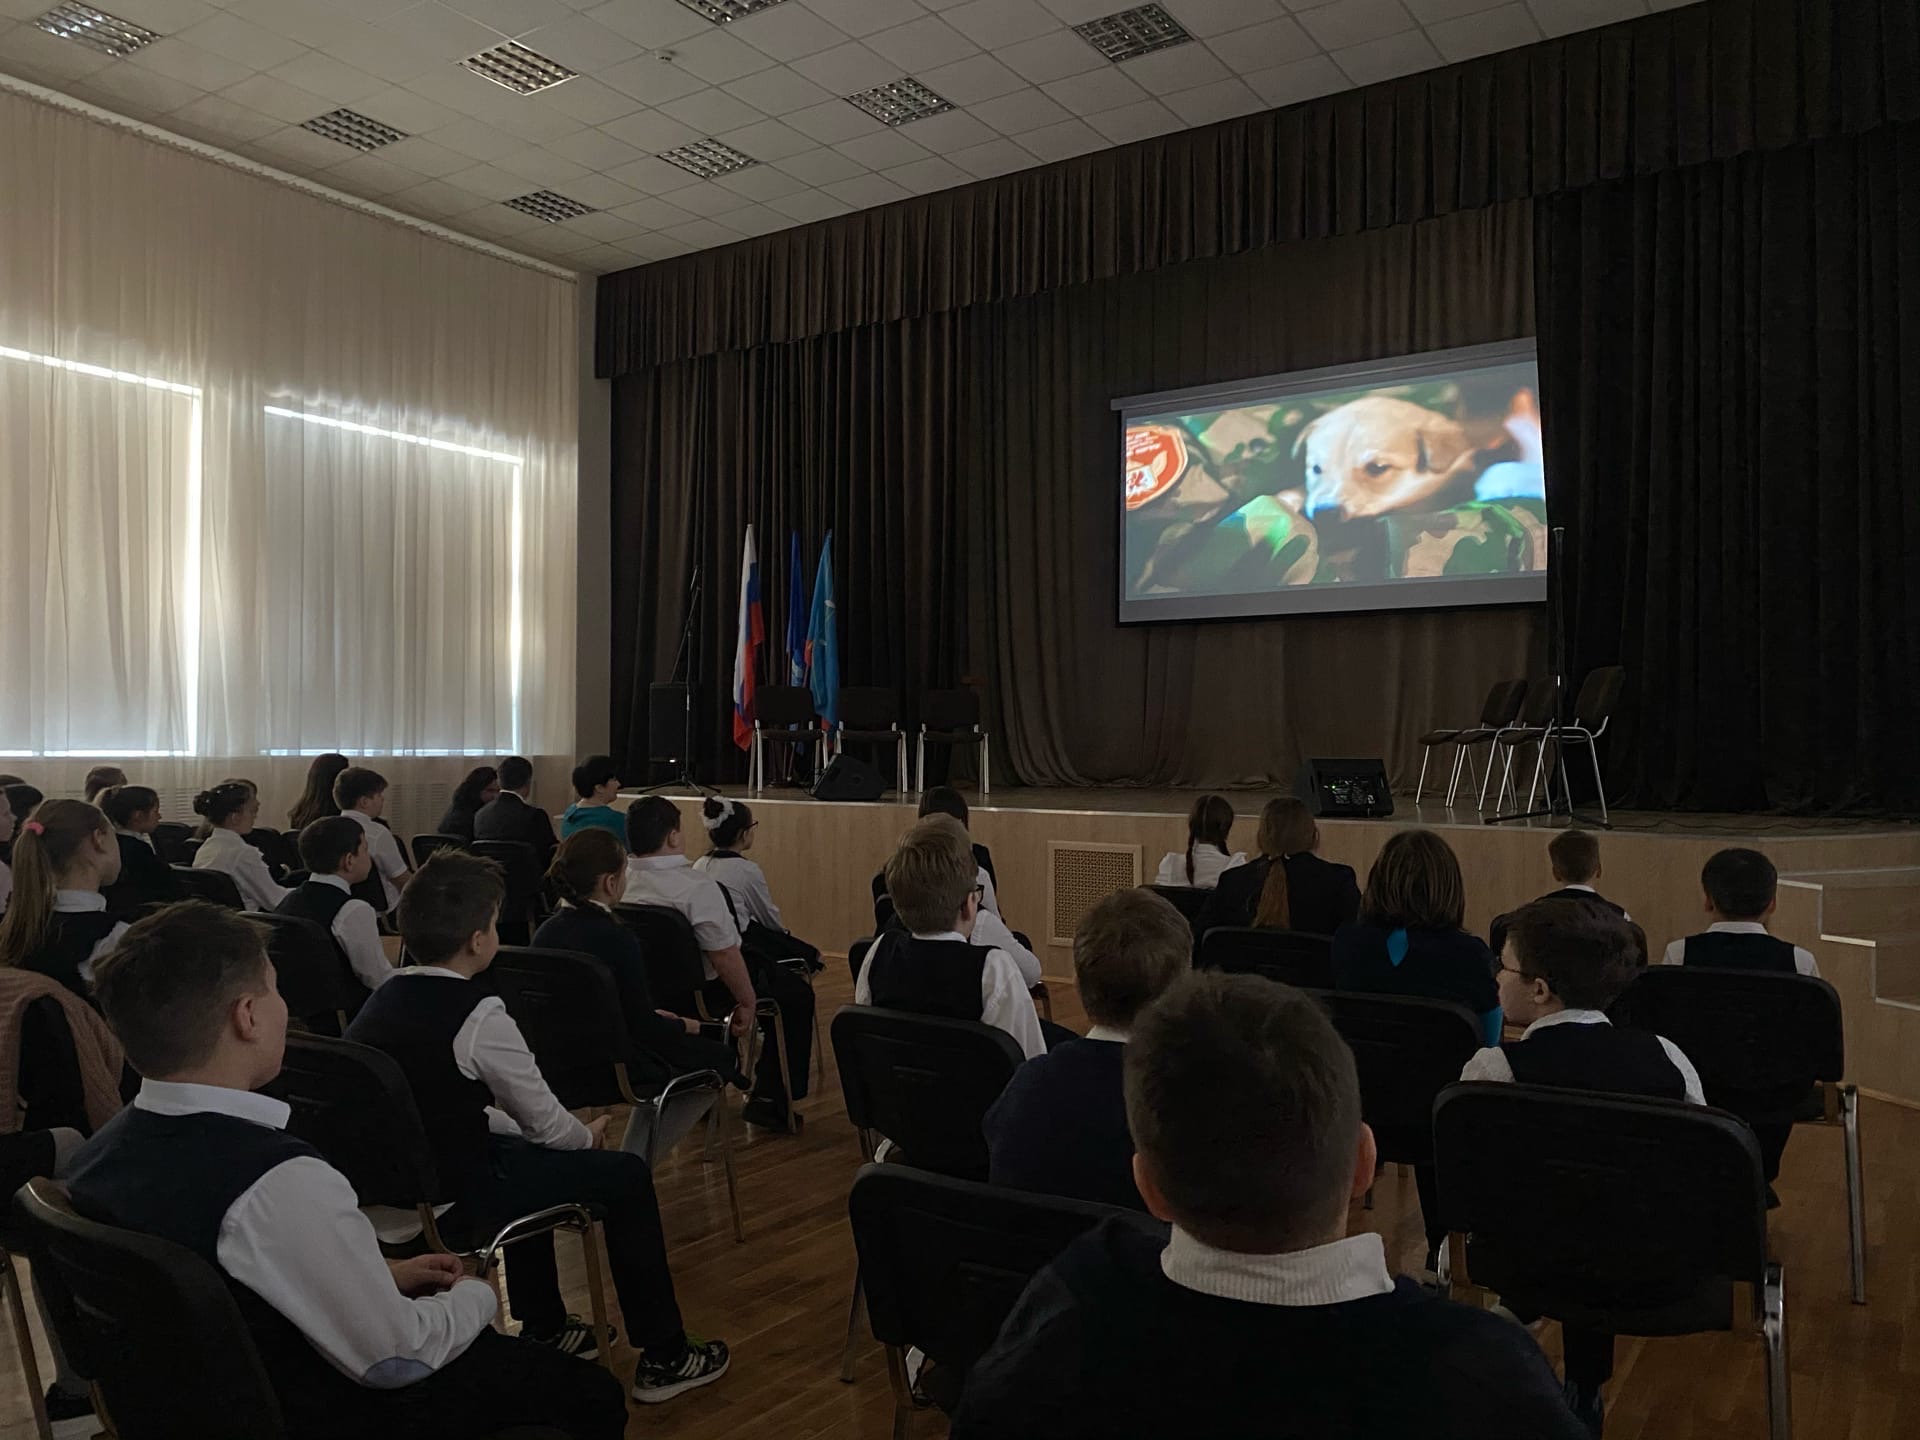 «Единая Россия» запустила образовательный проект «Киноуроки» по всей стране